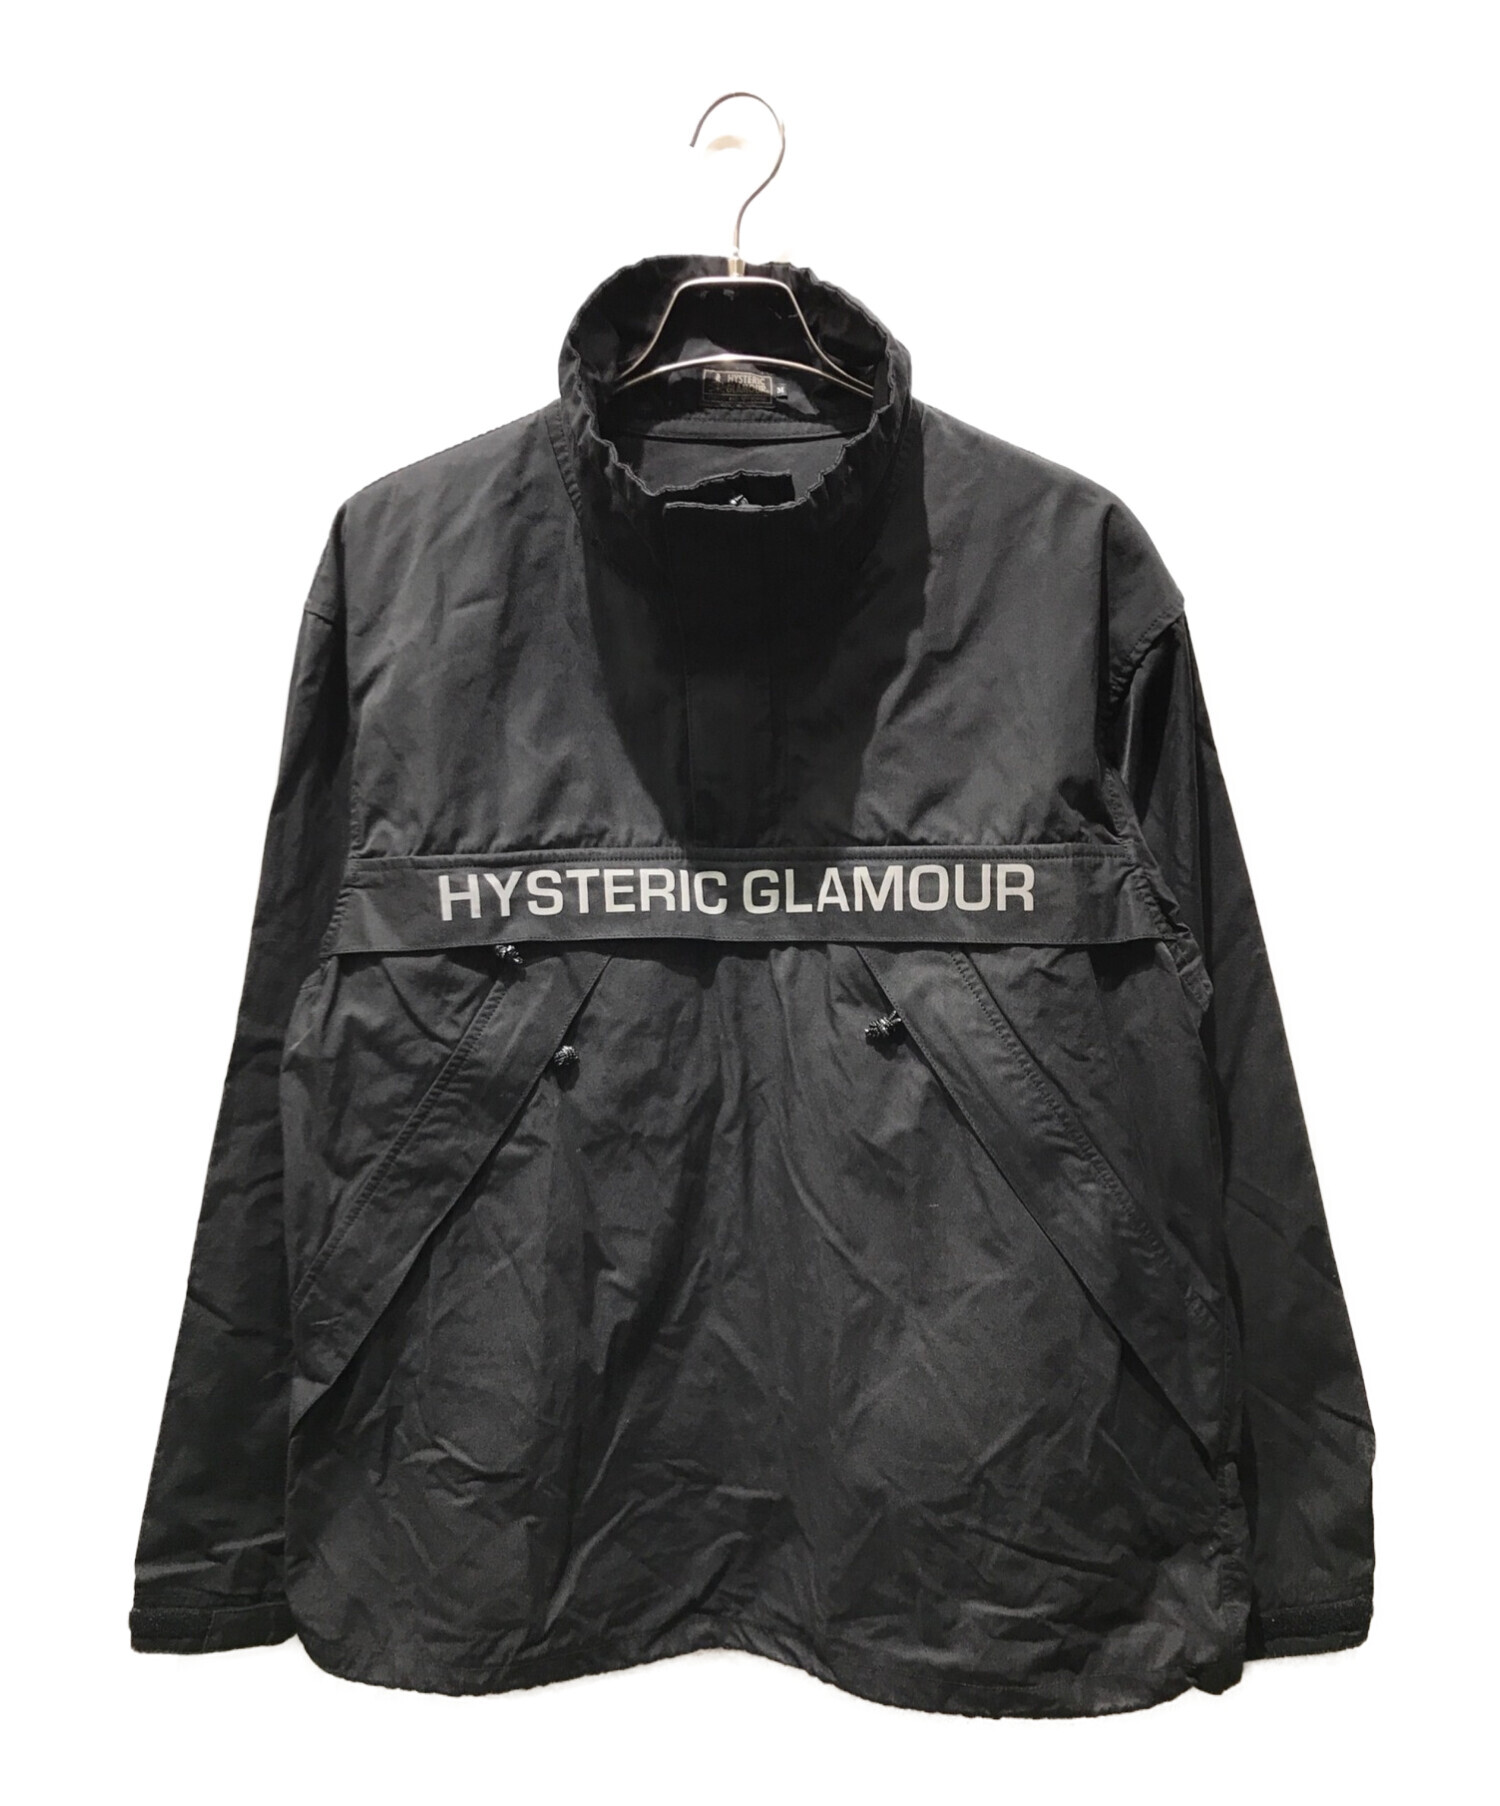 Hysteric Glamour (ヒステリックグラマー) アノラックジャケット ブラック サイズ:M